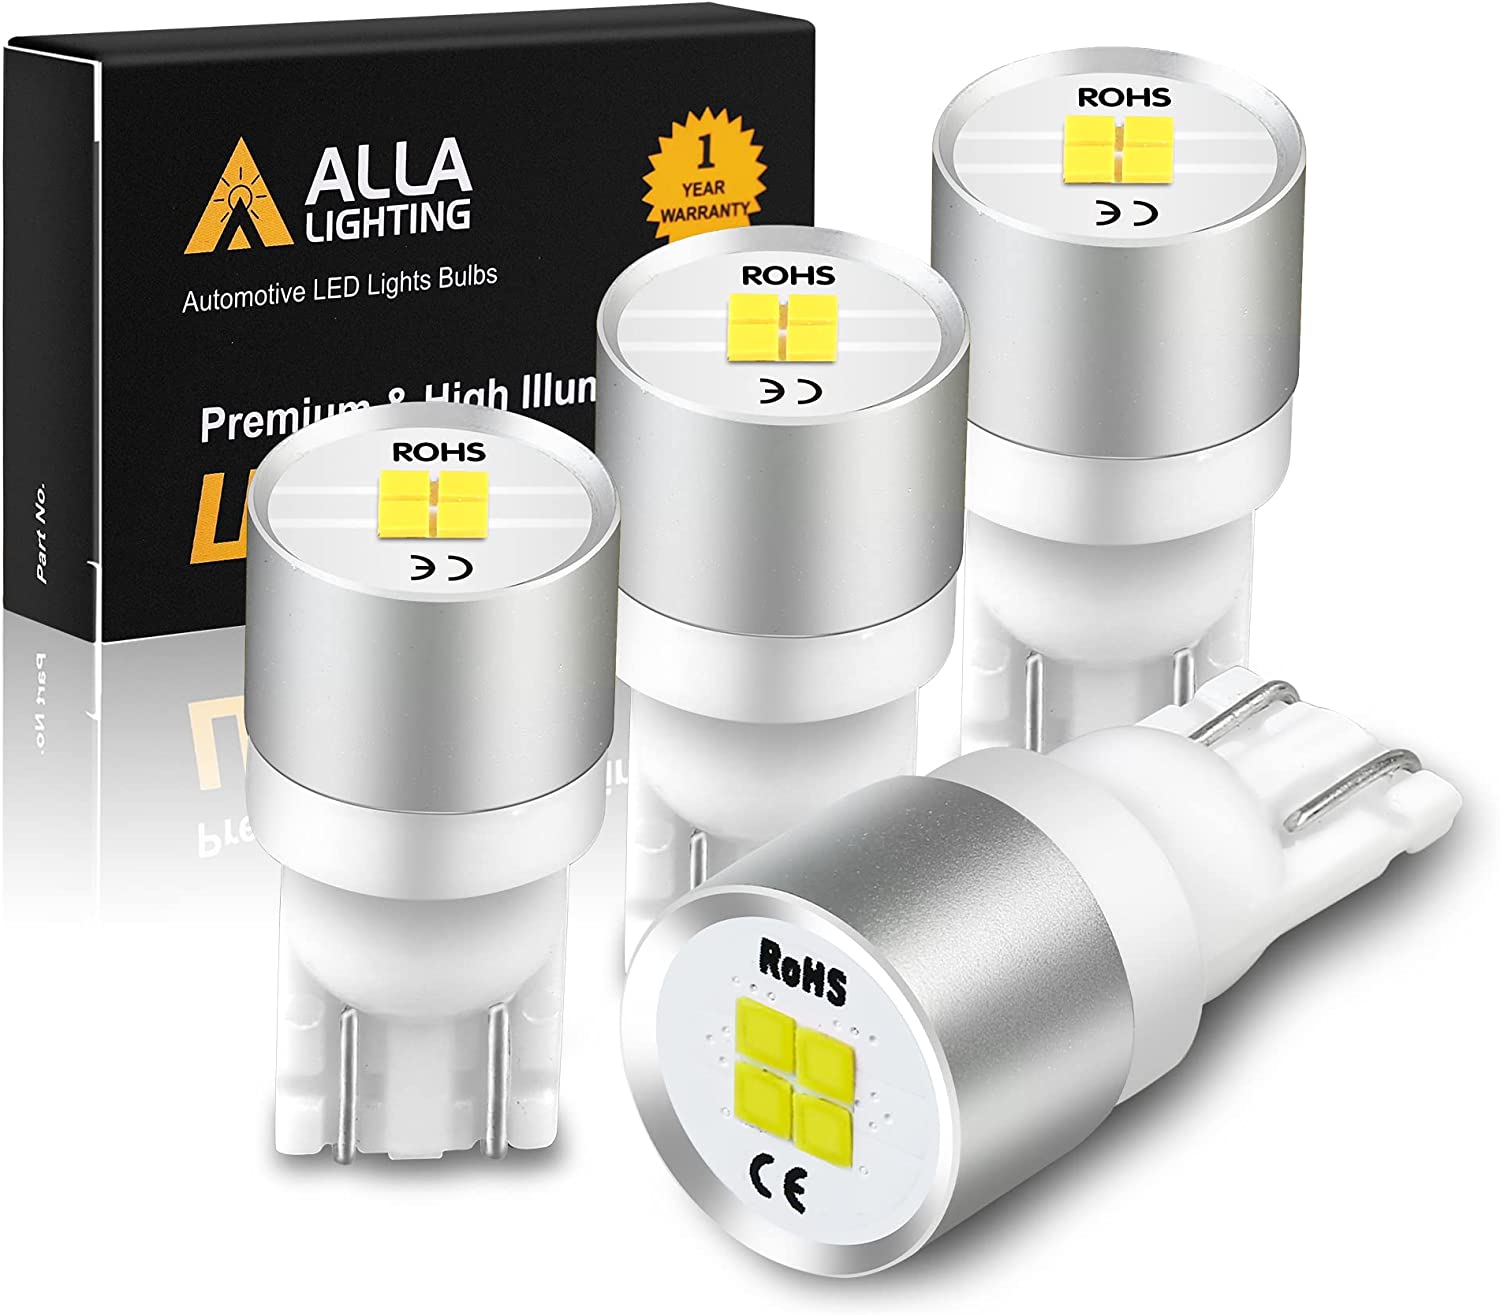 Image of Alla 168 LED